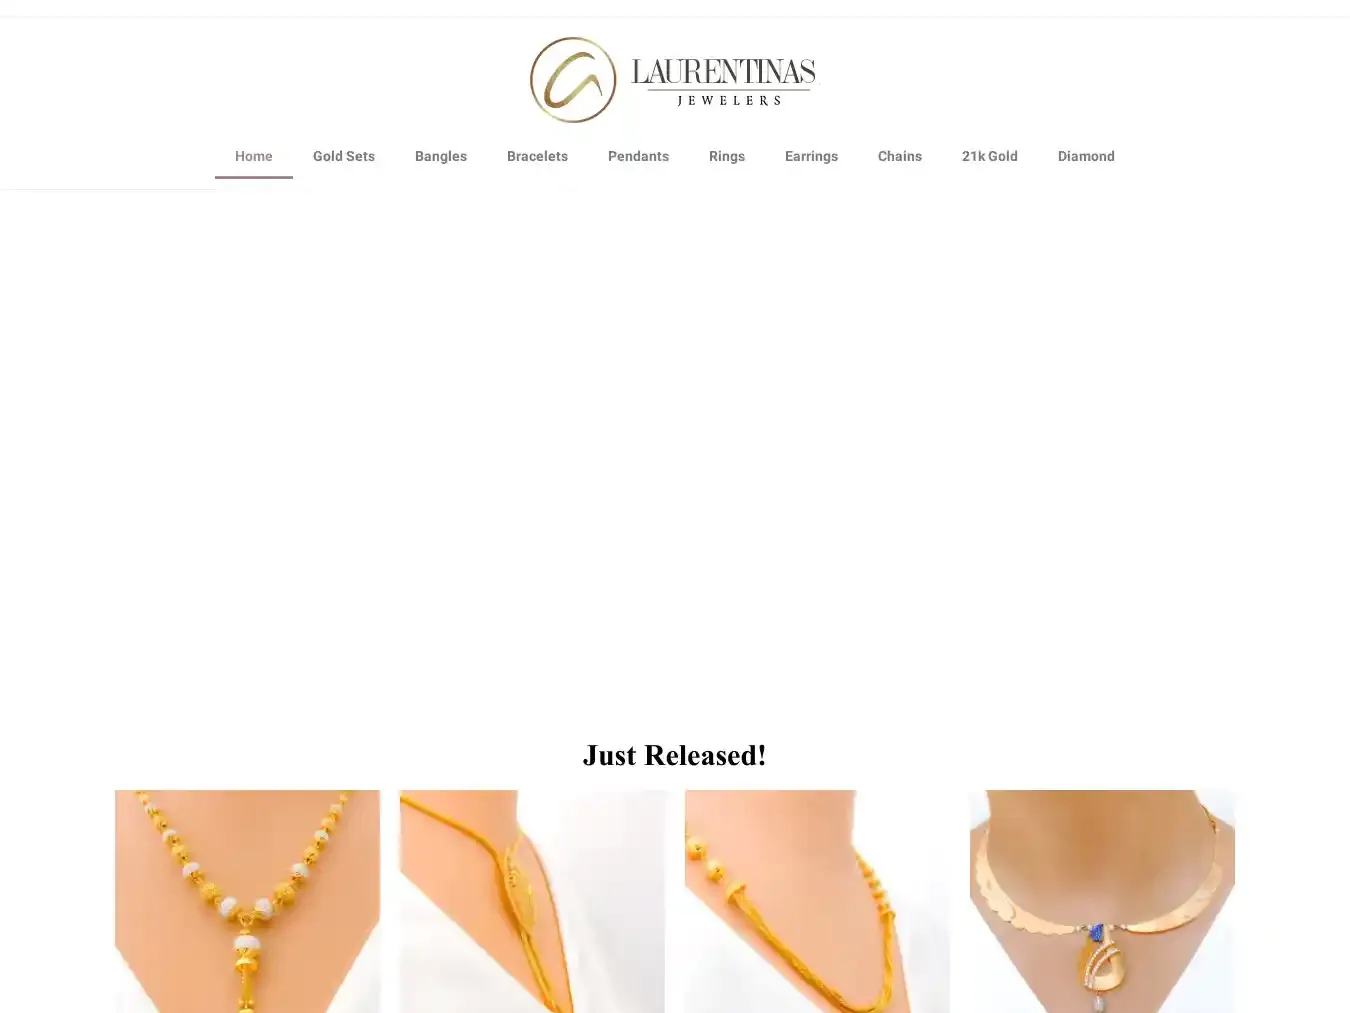 Laurentinasjewelers.com Fraudulent Non-Delivery website.